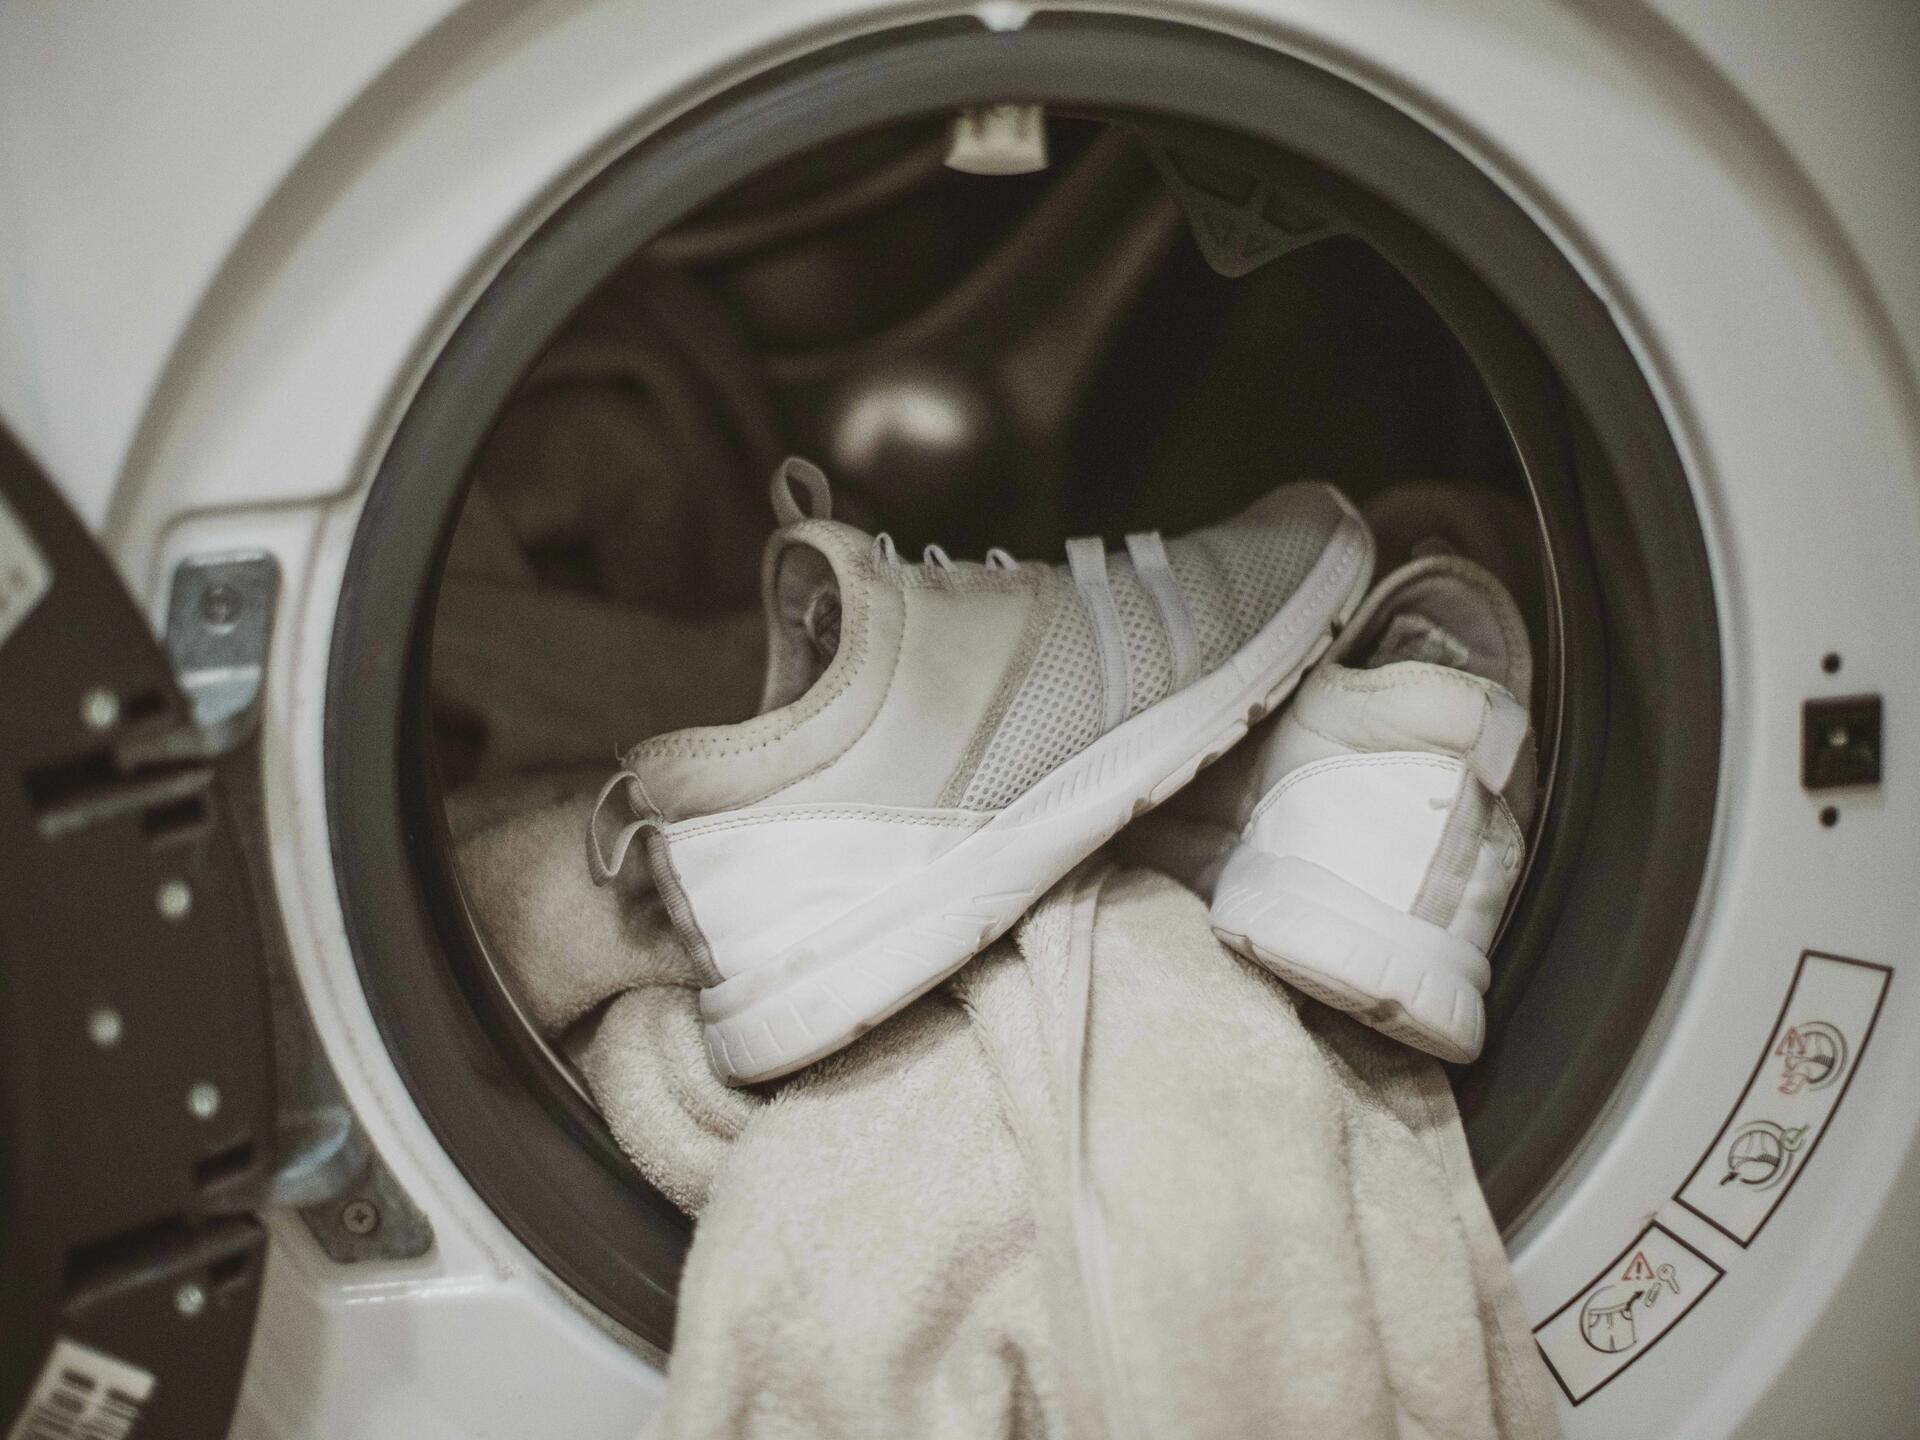 Tous nos conseils pour laver des chaussures à la machine à laver